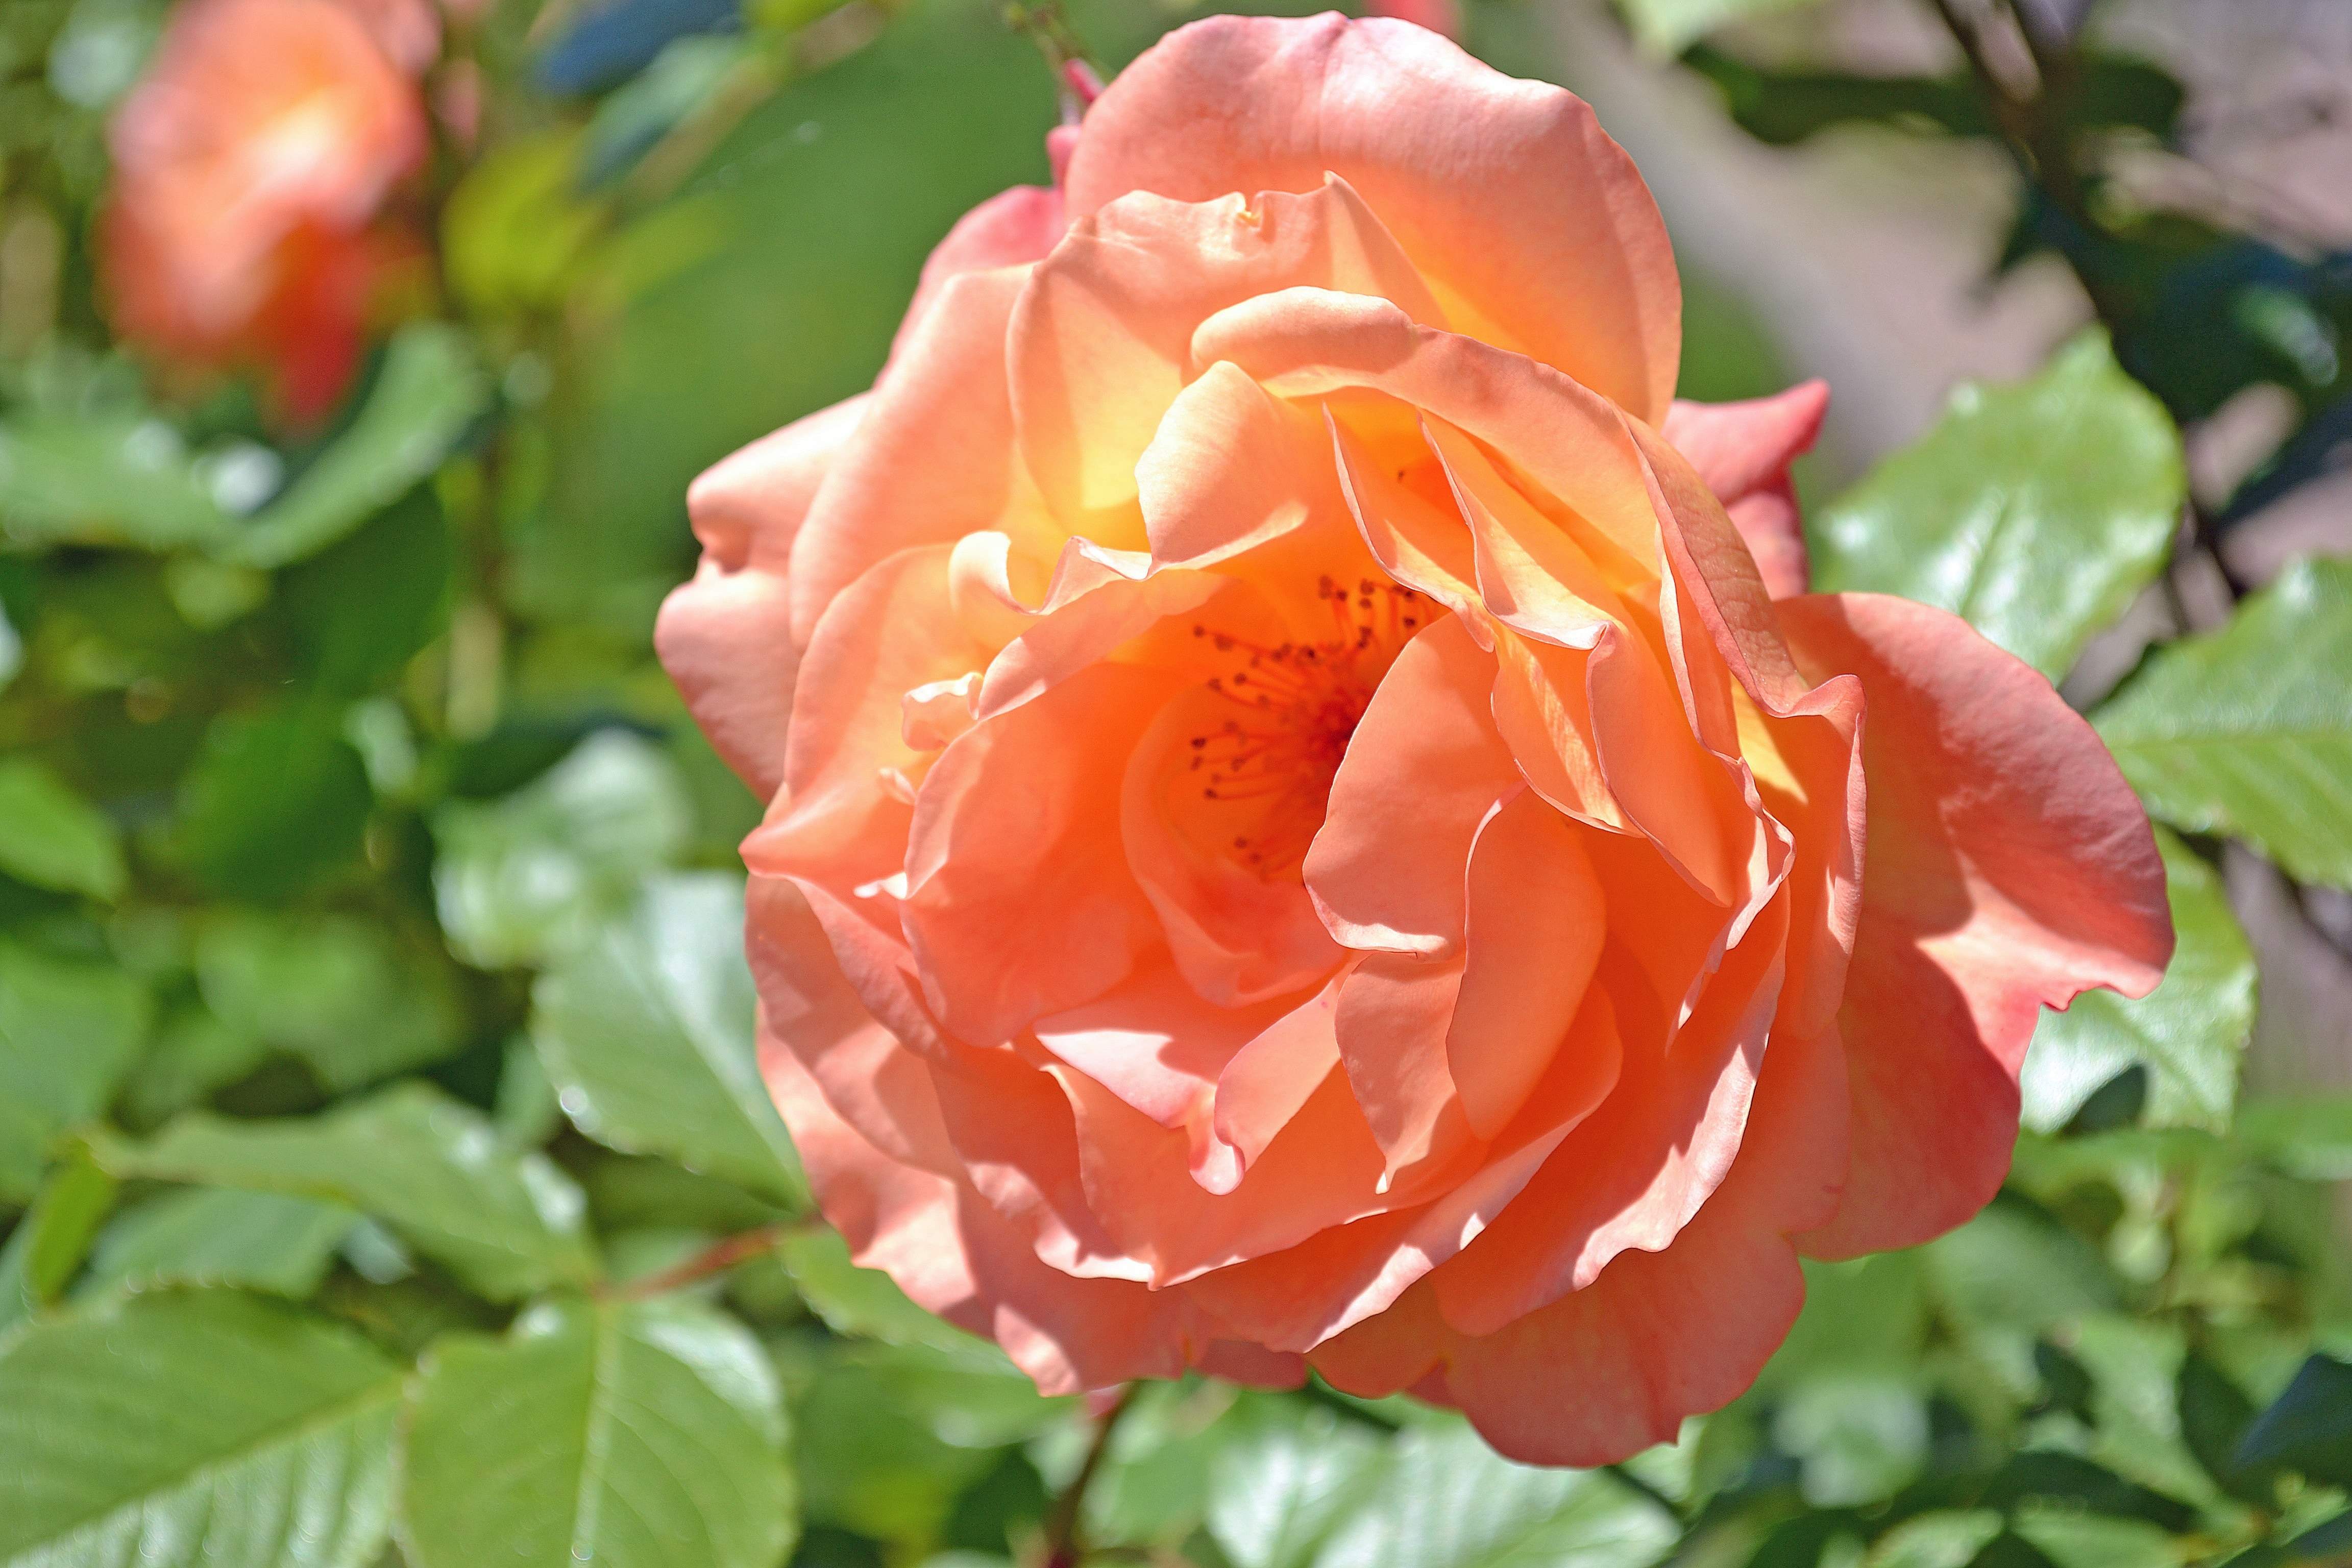 orange rose plant during daytime